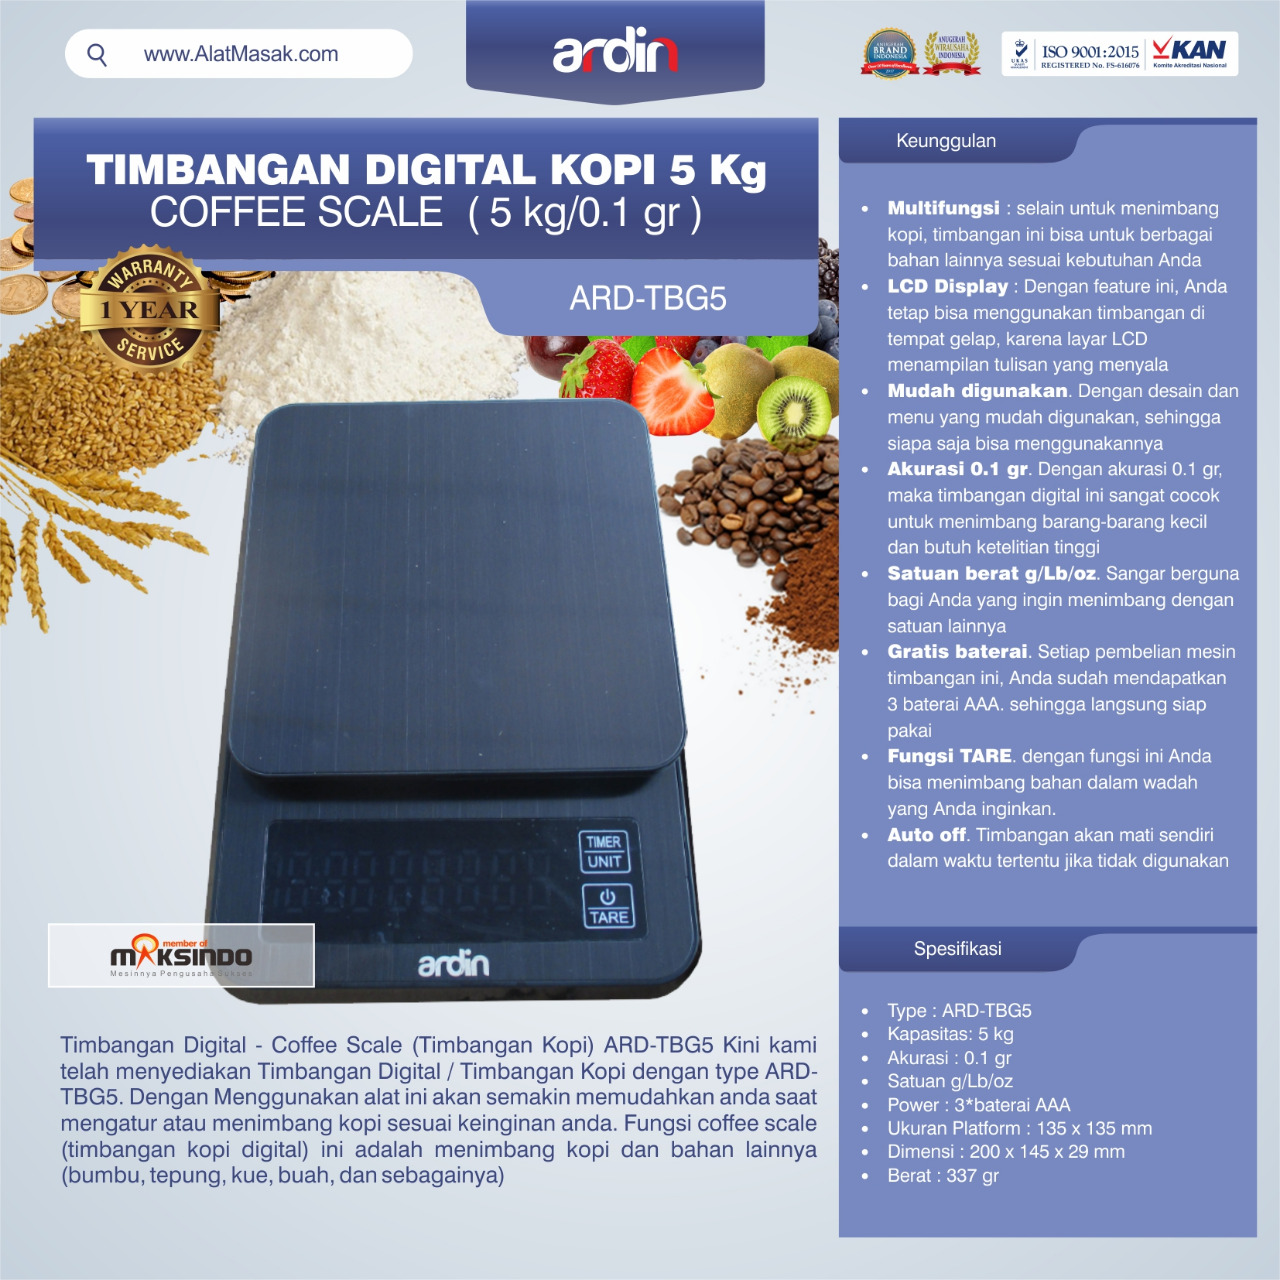 Jual Timbangan Digital Kopi 5 kg ARD-TBG5 (coffee scale) di Blitar